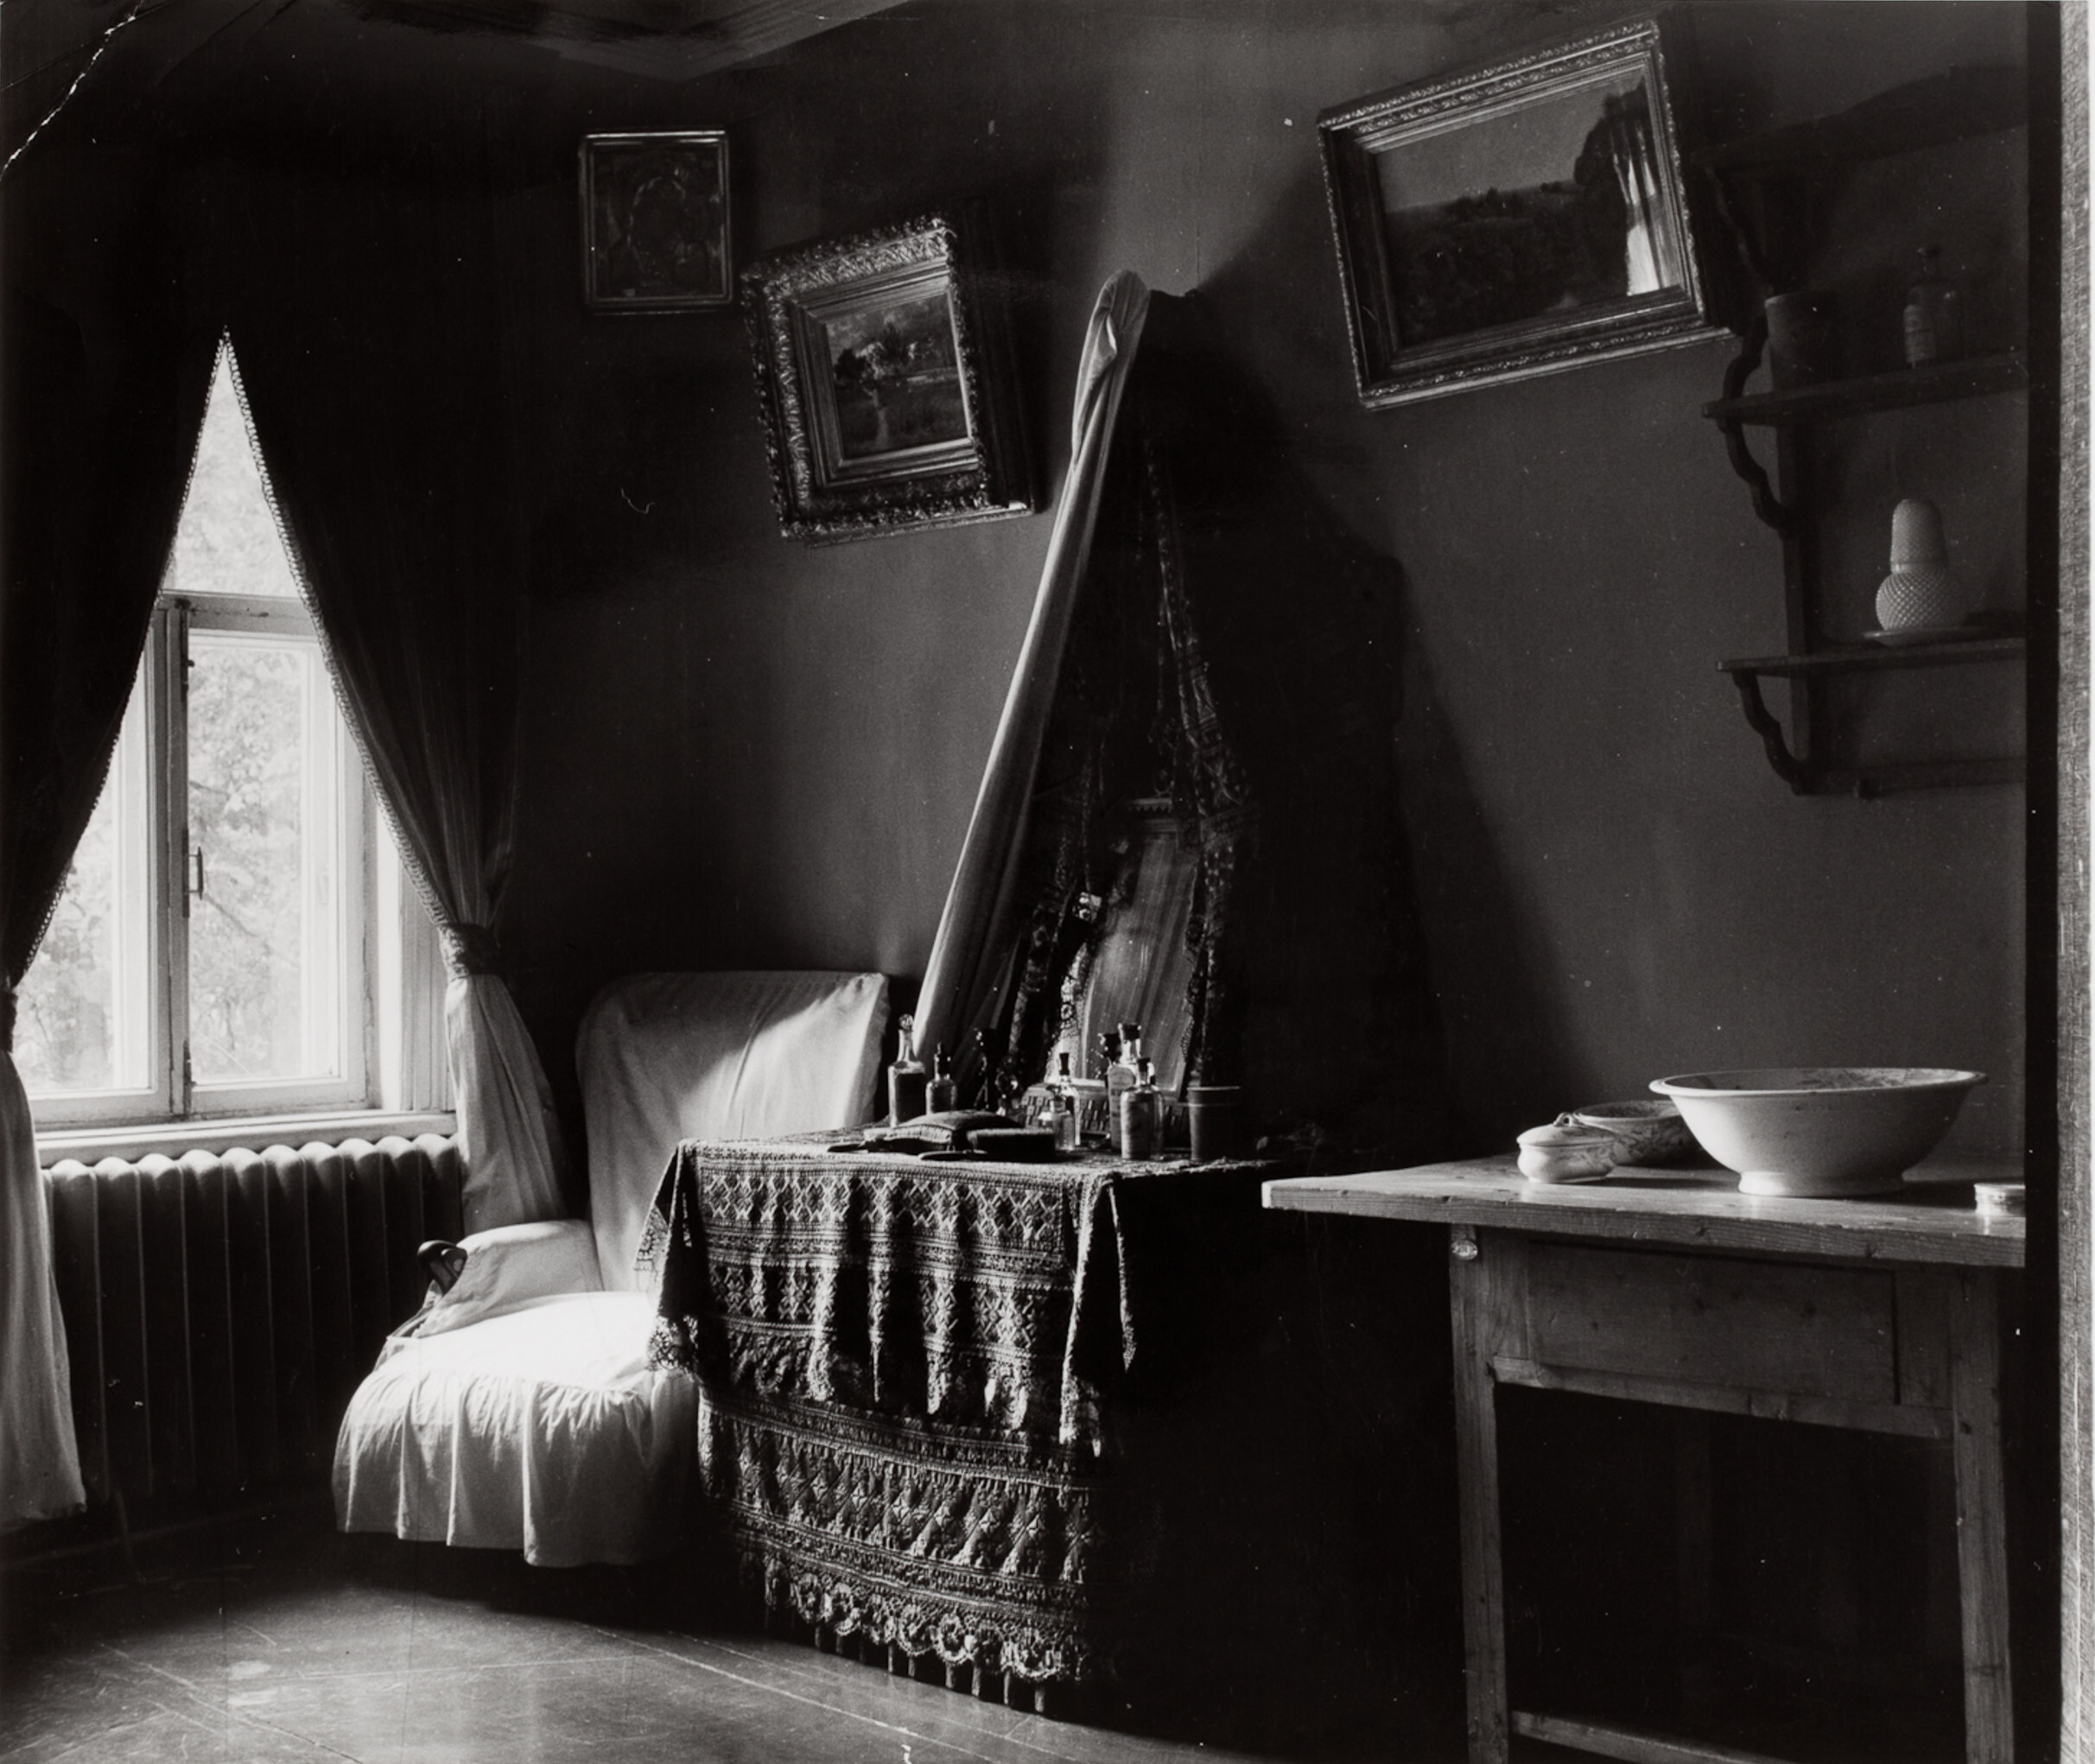 Комната в Доме Чайковского, Клин, СССР, 1947 год. Фотограф Роберт Капа